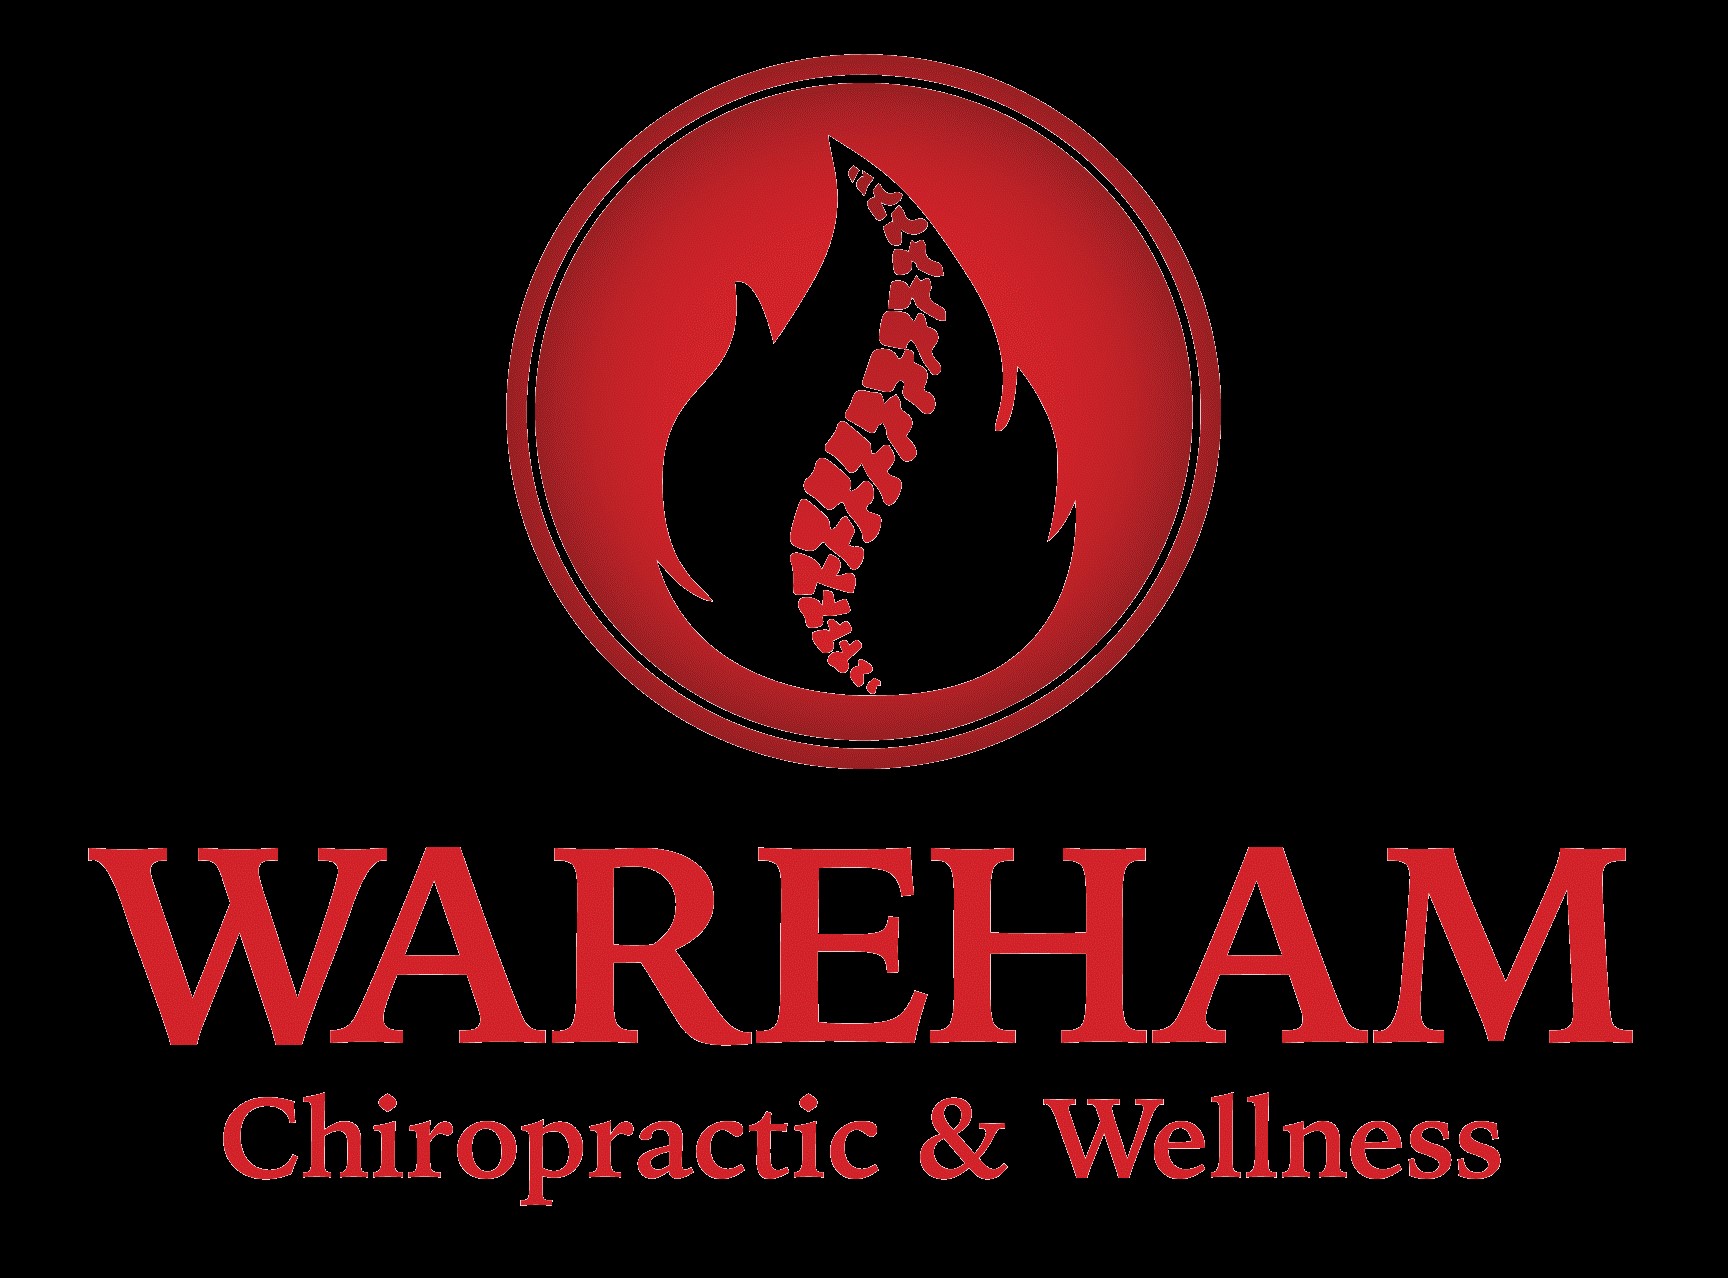 Wareham Chiropractic & Wellness